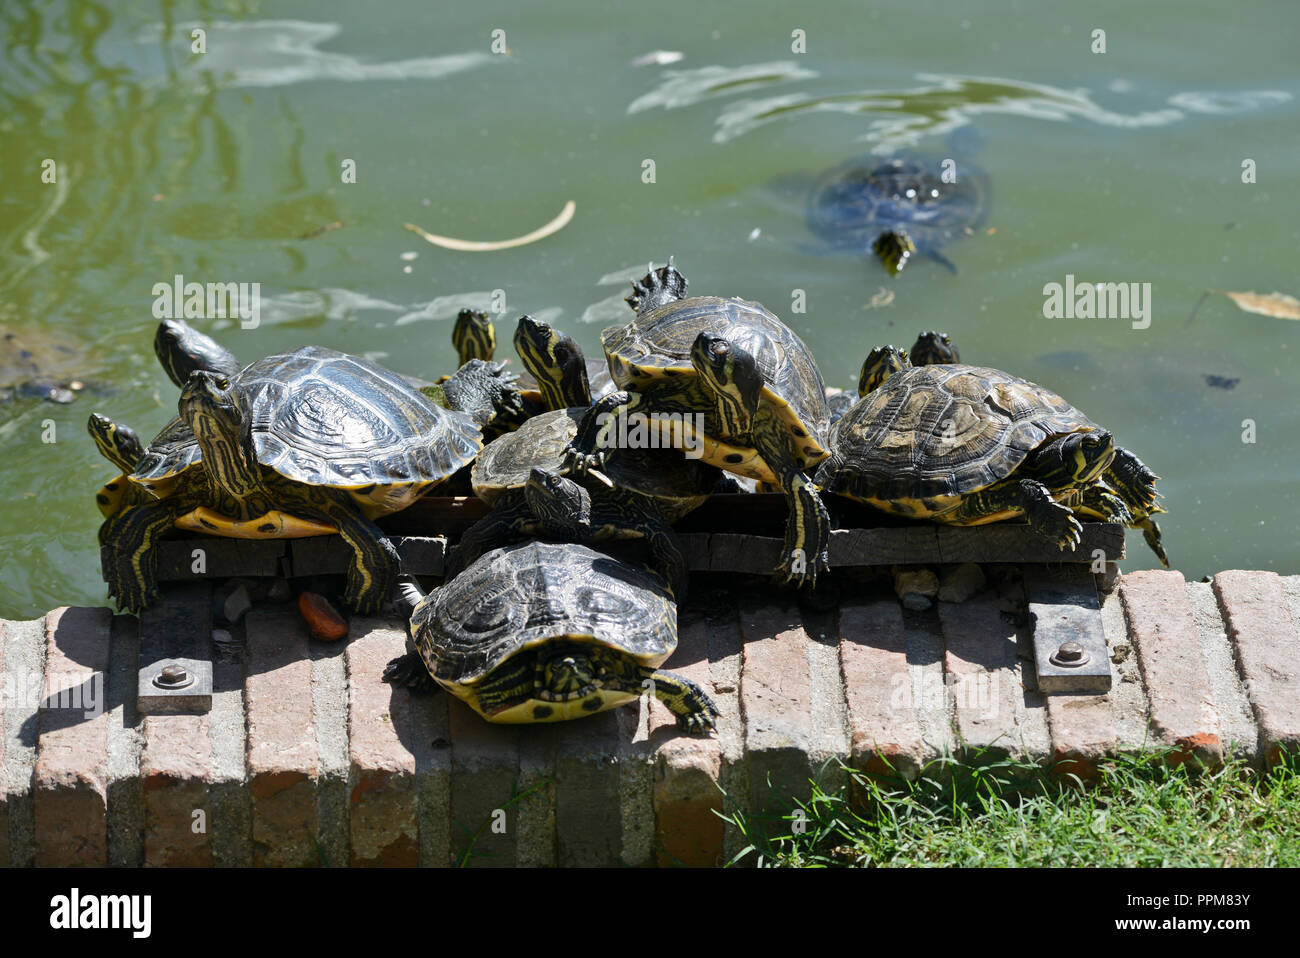 Le tartarughe marine a prendere il sole. Buen Retiro Park - Parque del Buen Retiro, Madrid, Spagna Foto Stock